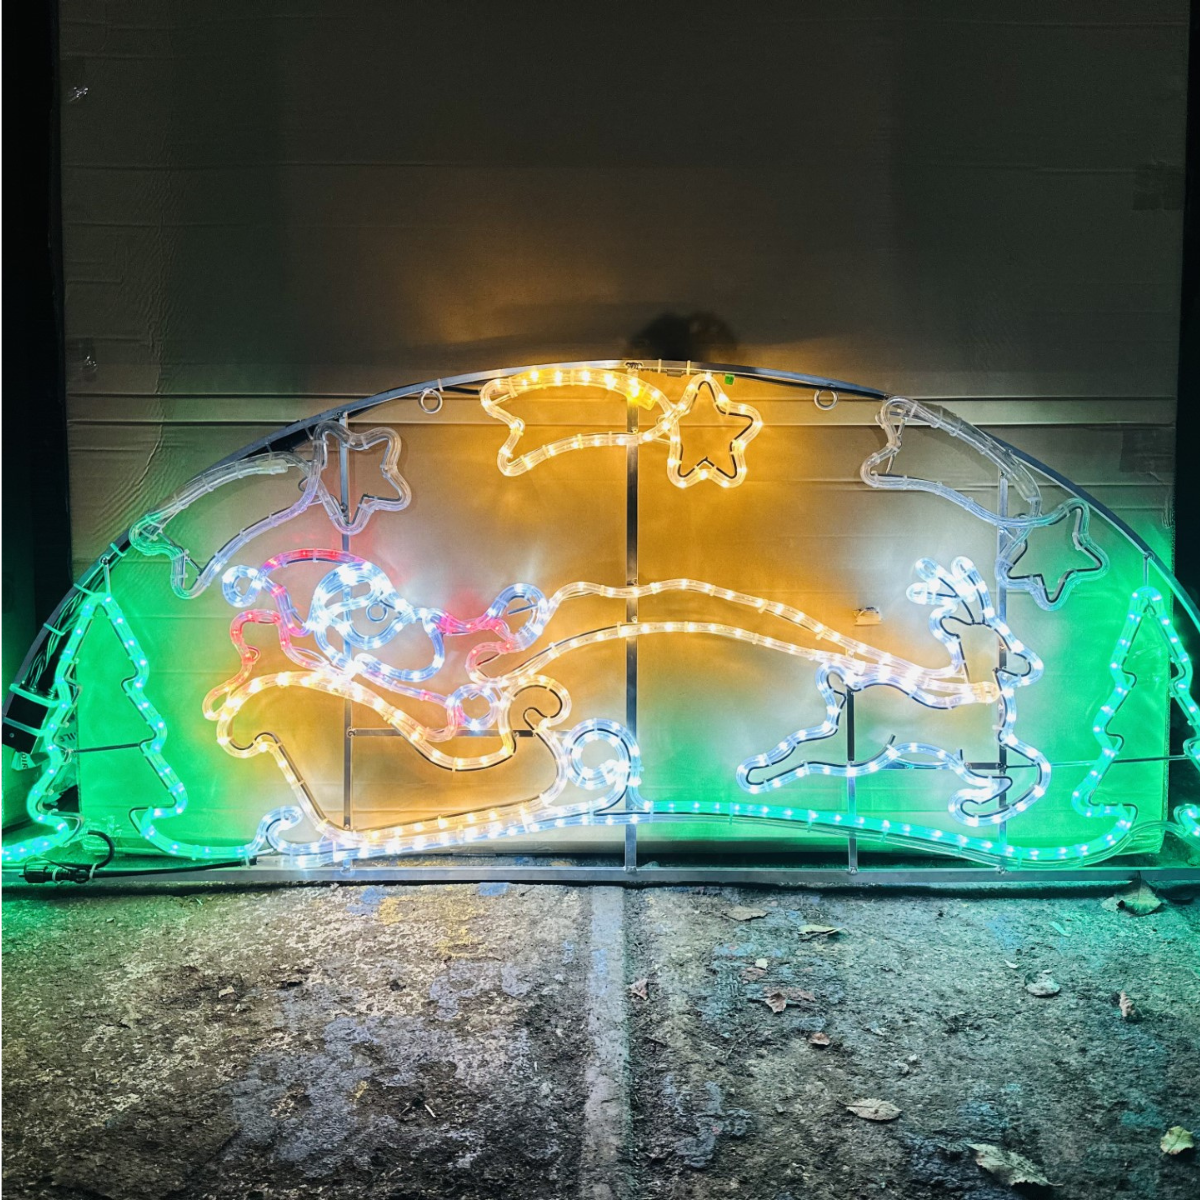 1.8m Santa with Sleigh Reindeer and Shooting Stars Animated Christmas Neon Rope Light Display